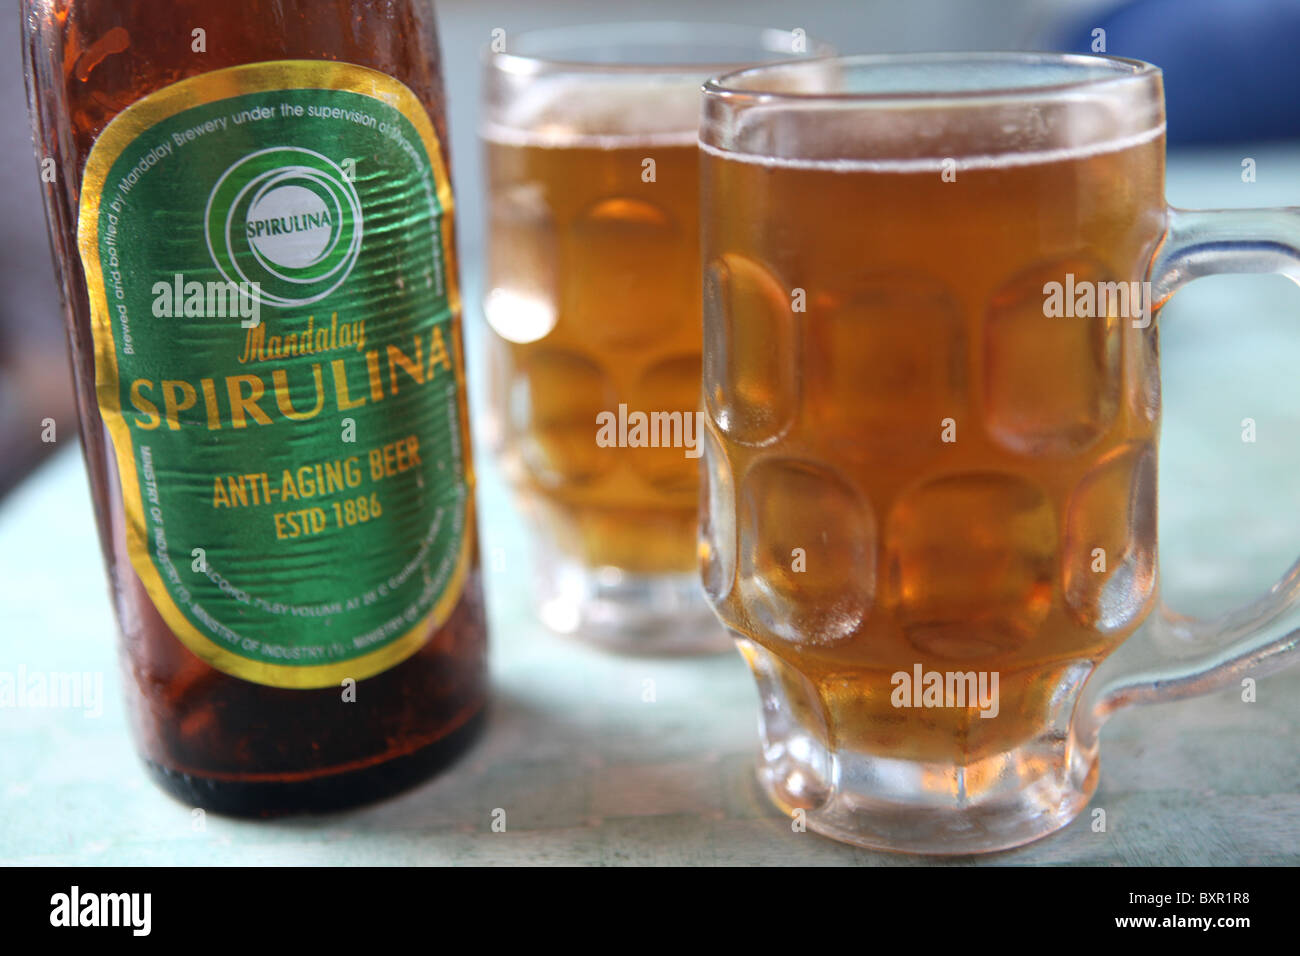 Mandalay Spirulina Anti Ageing Bier, ganz Myanmar oder Burma verkauft, die Spirulina enthält einen gesundheitsfördernden Alge. Stockfoto